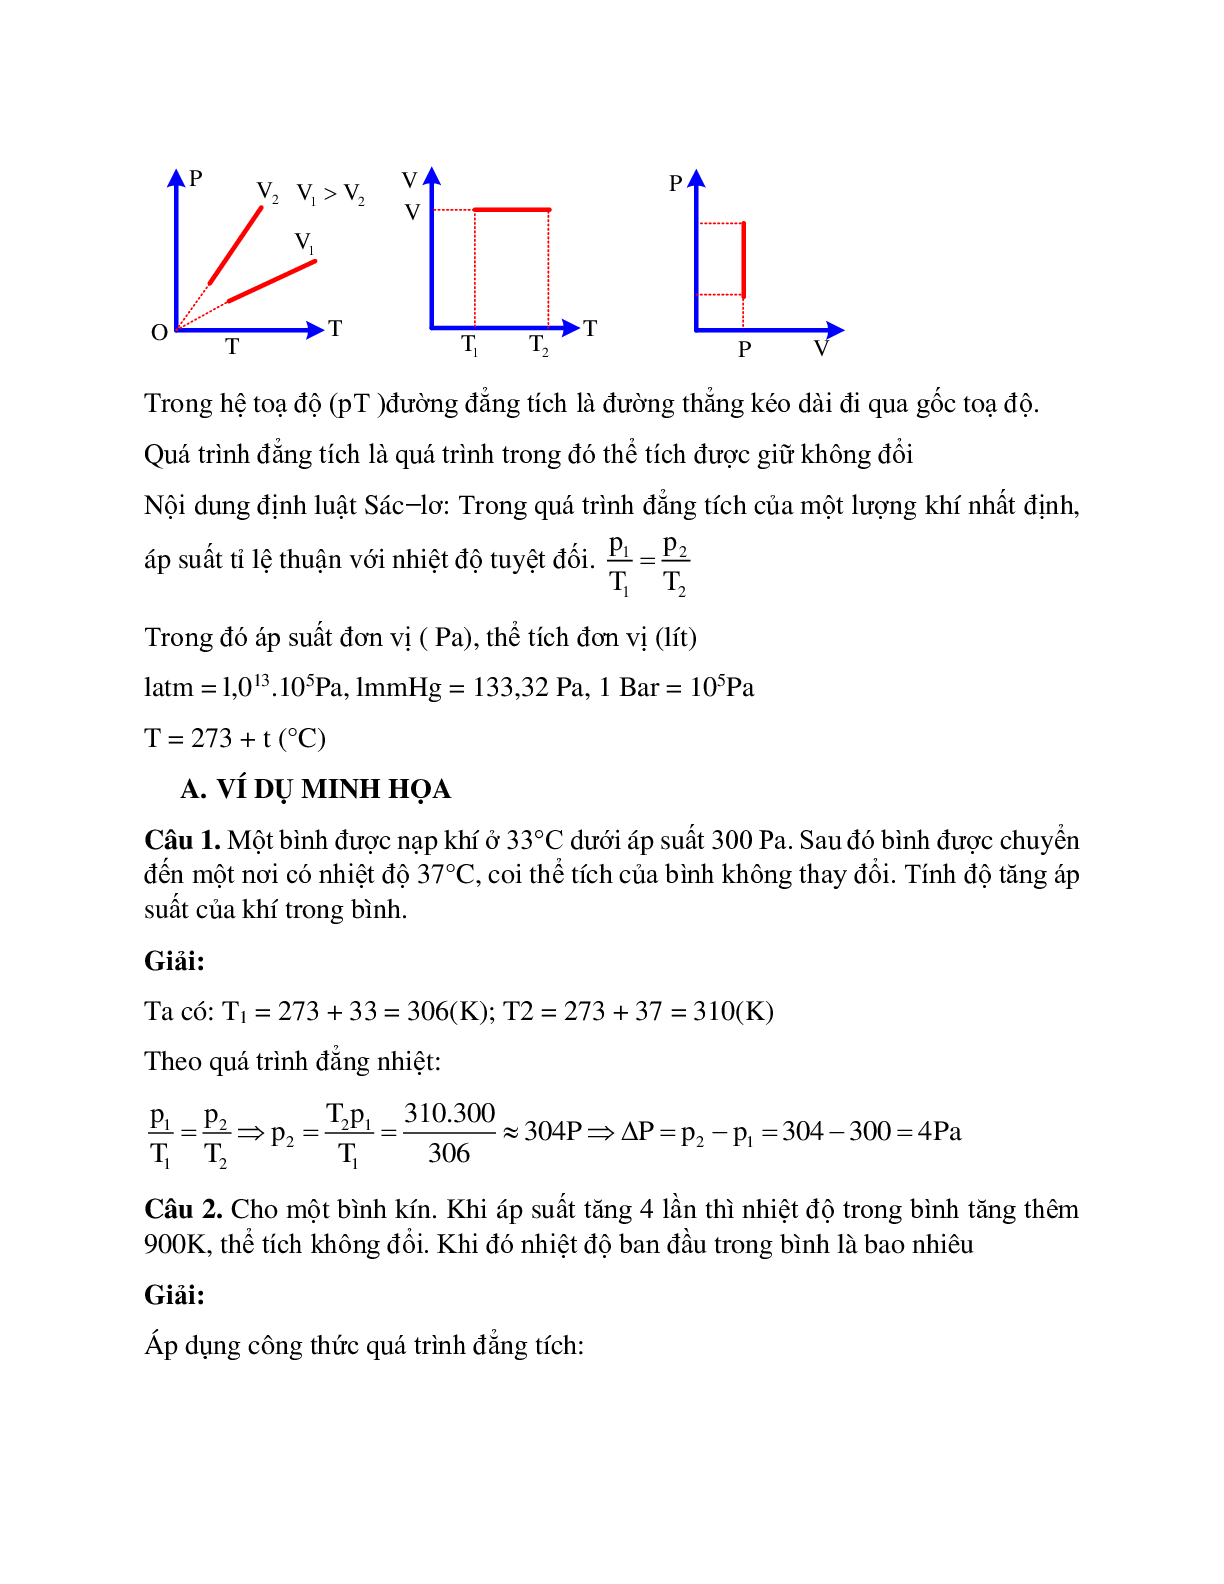 Bài tập về quá trình đẳng tích - Định luật sác - lơ có đáp án (trang 2)